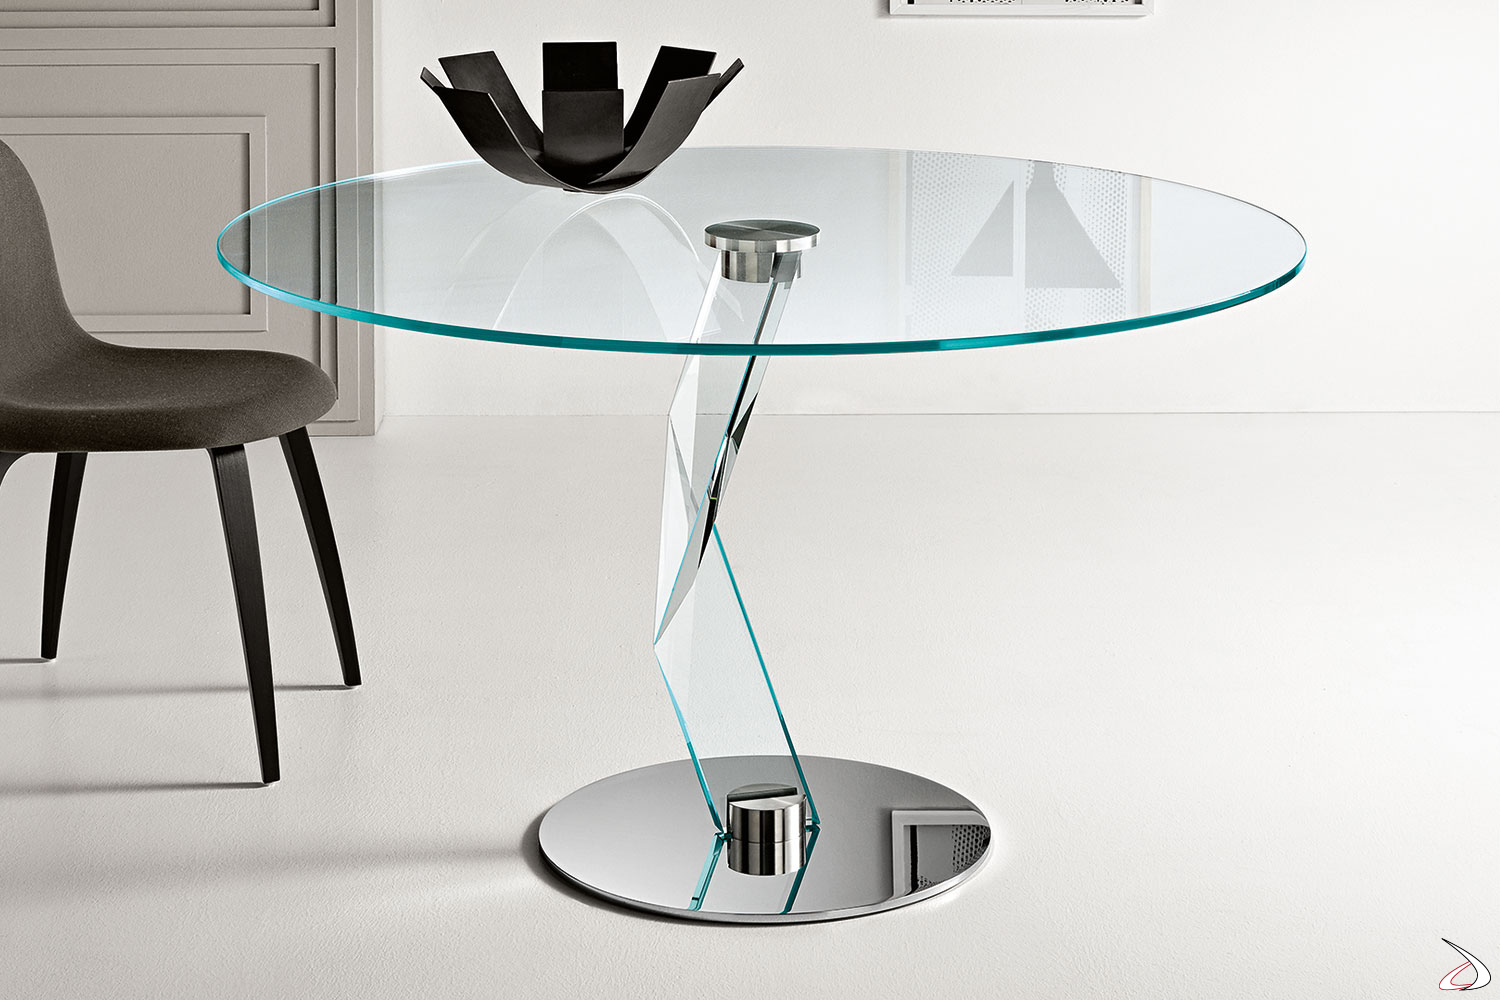 Tavolo moderno ed elegante in vetro temperato con top rotondo, caratterizzato dalla forma scultorea della gamba portante e dalla base in metallo cromato che permettono giochi di luce.